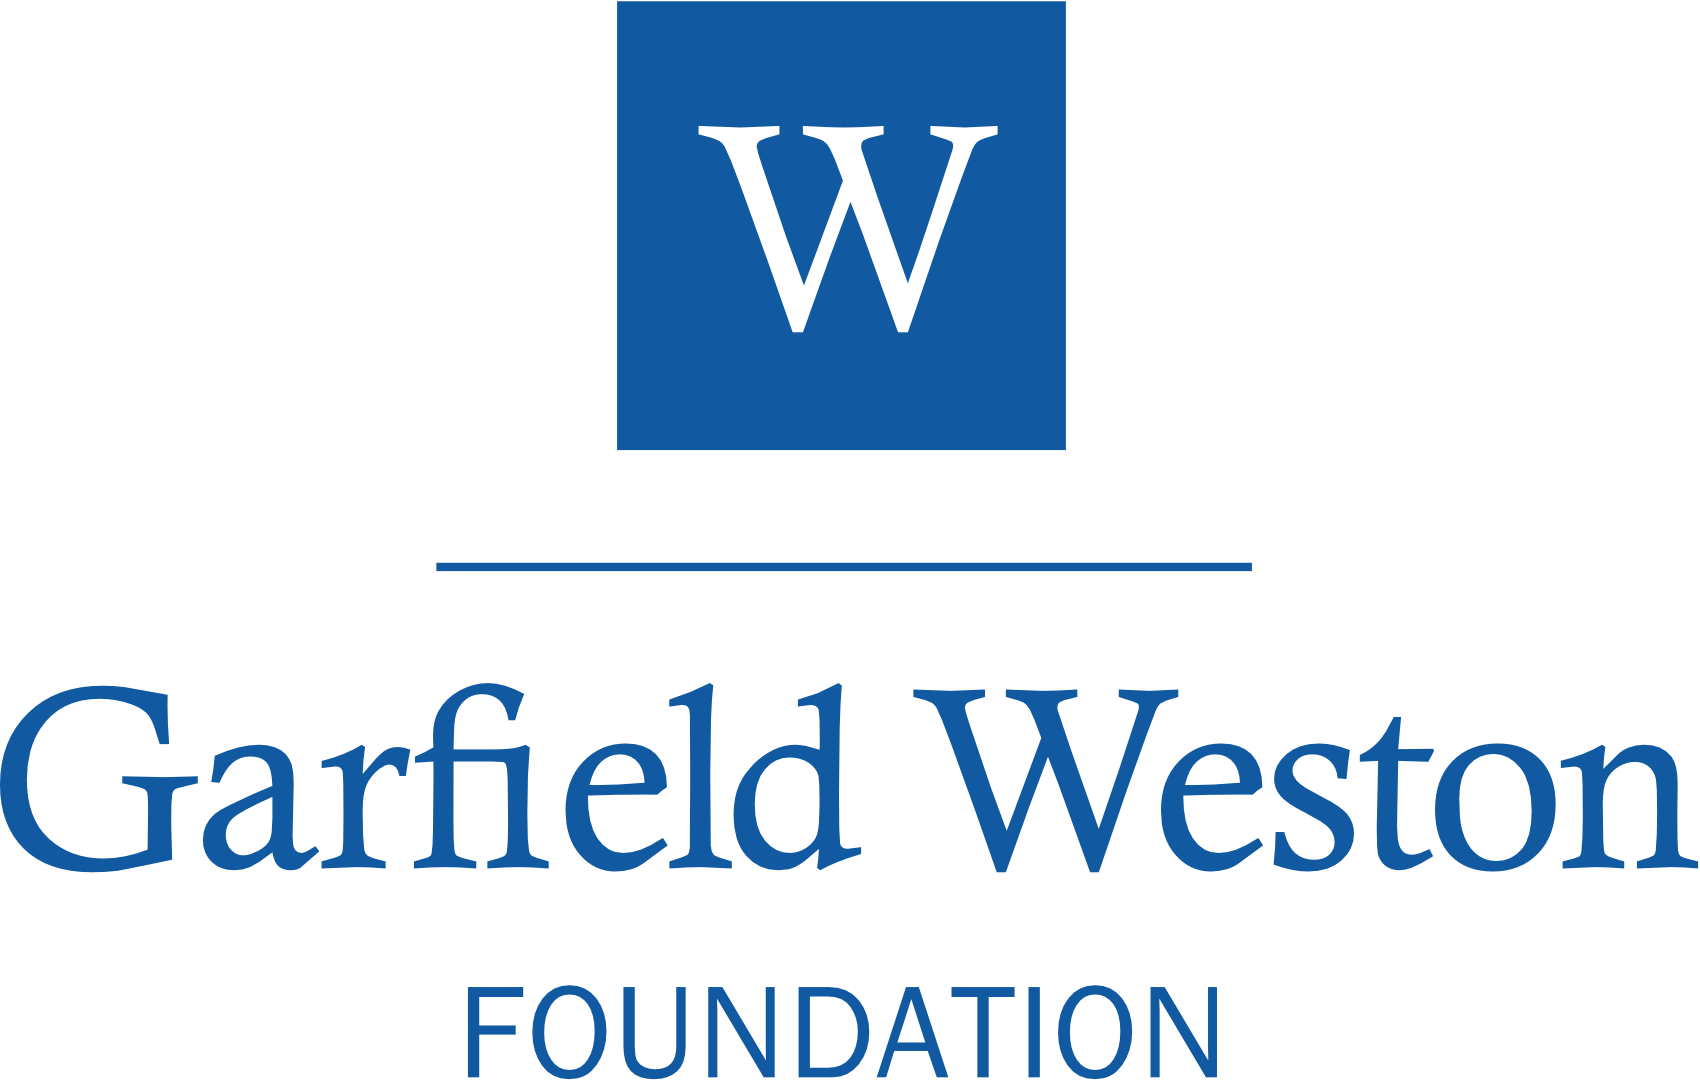 Garfield Weston Foundation website